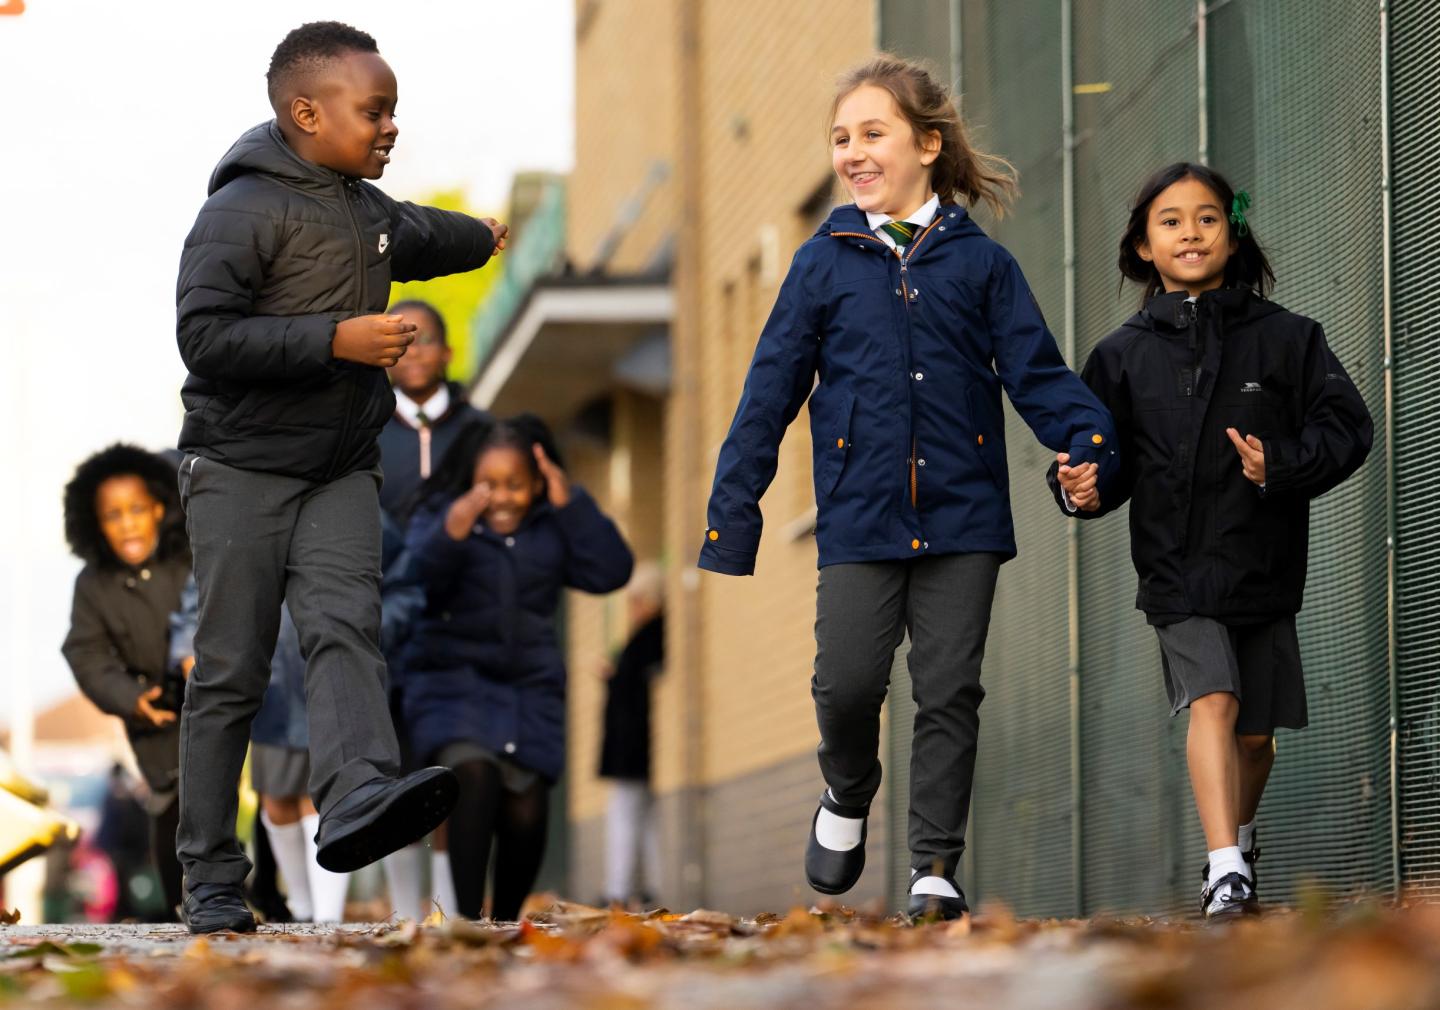 Image of children walking to school